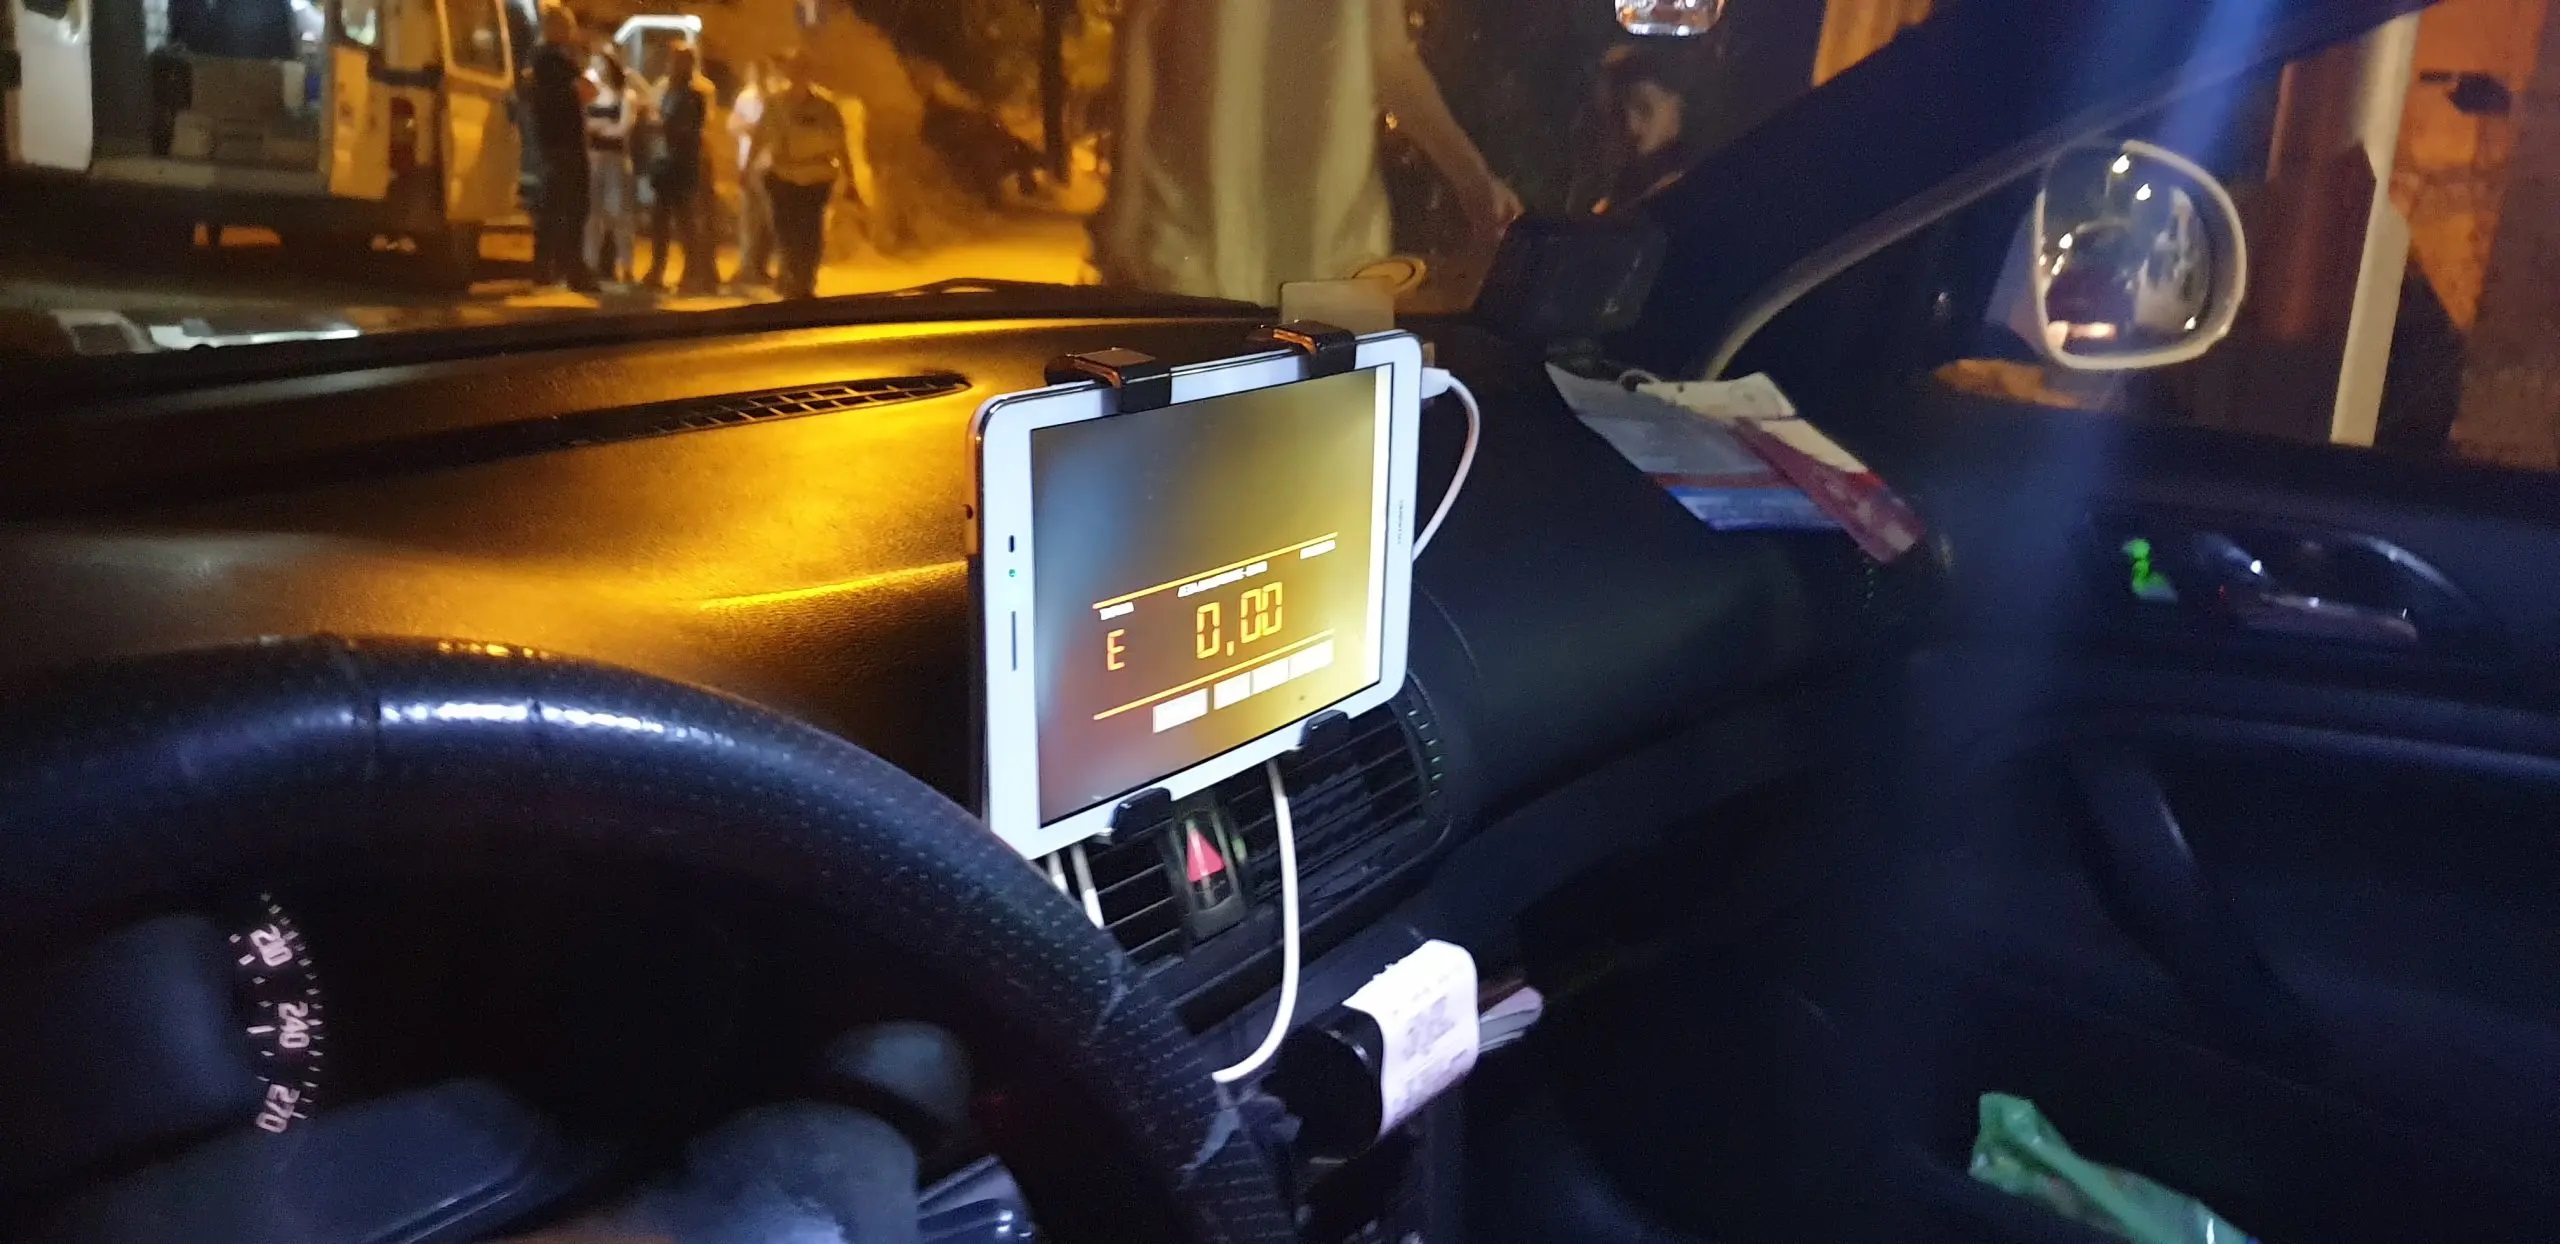 Ταξί: Η απάτη με τα εικονικά ταξίμετρα - Πώς θα την αντιληφθείτε